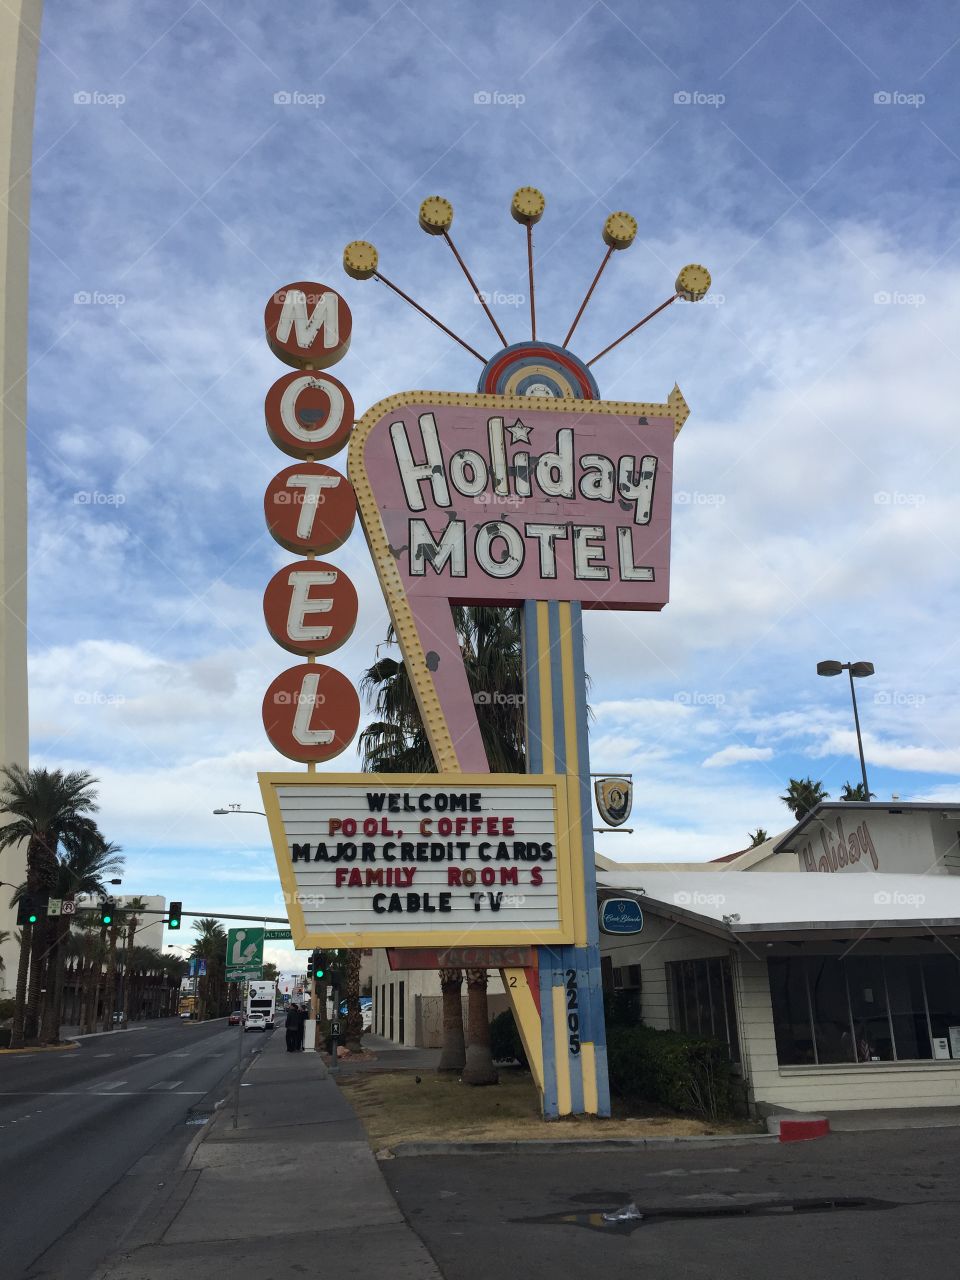 Las Vegas, NV Dec 2015
Travelogue by Lauren Busiere